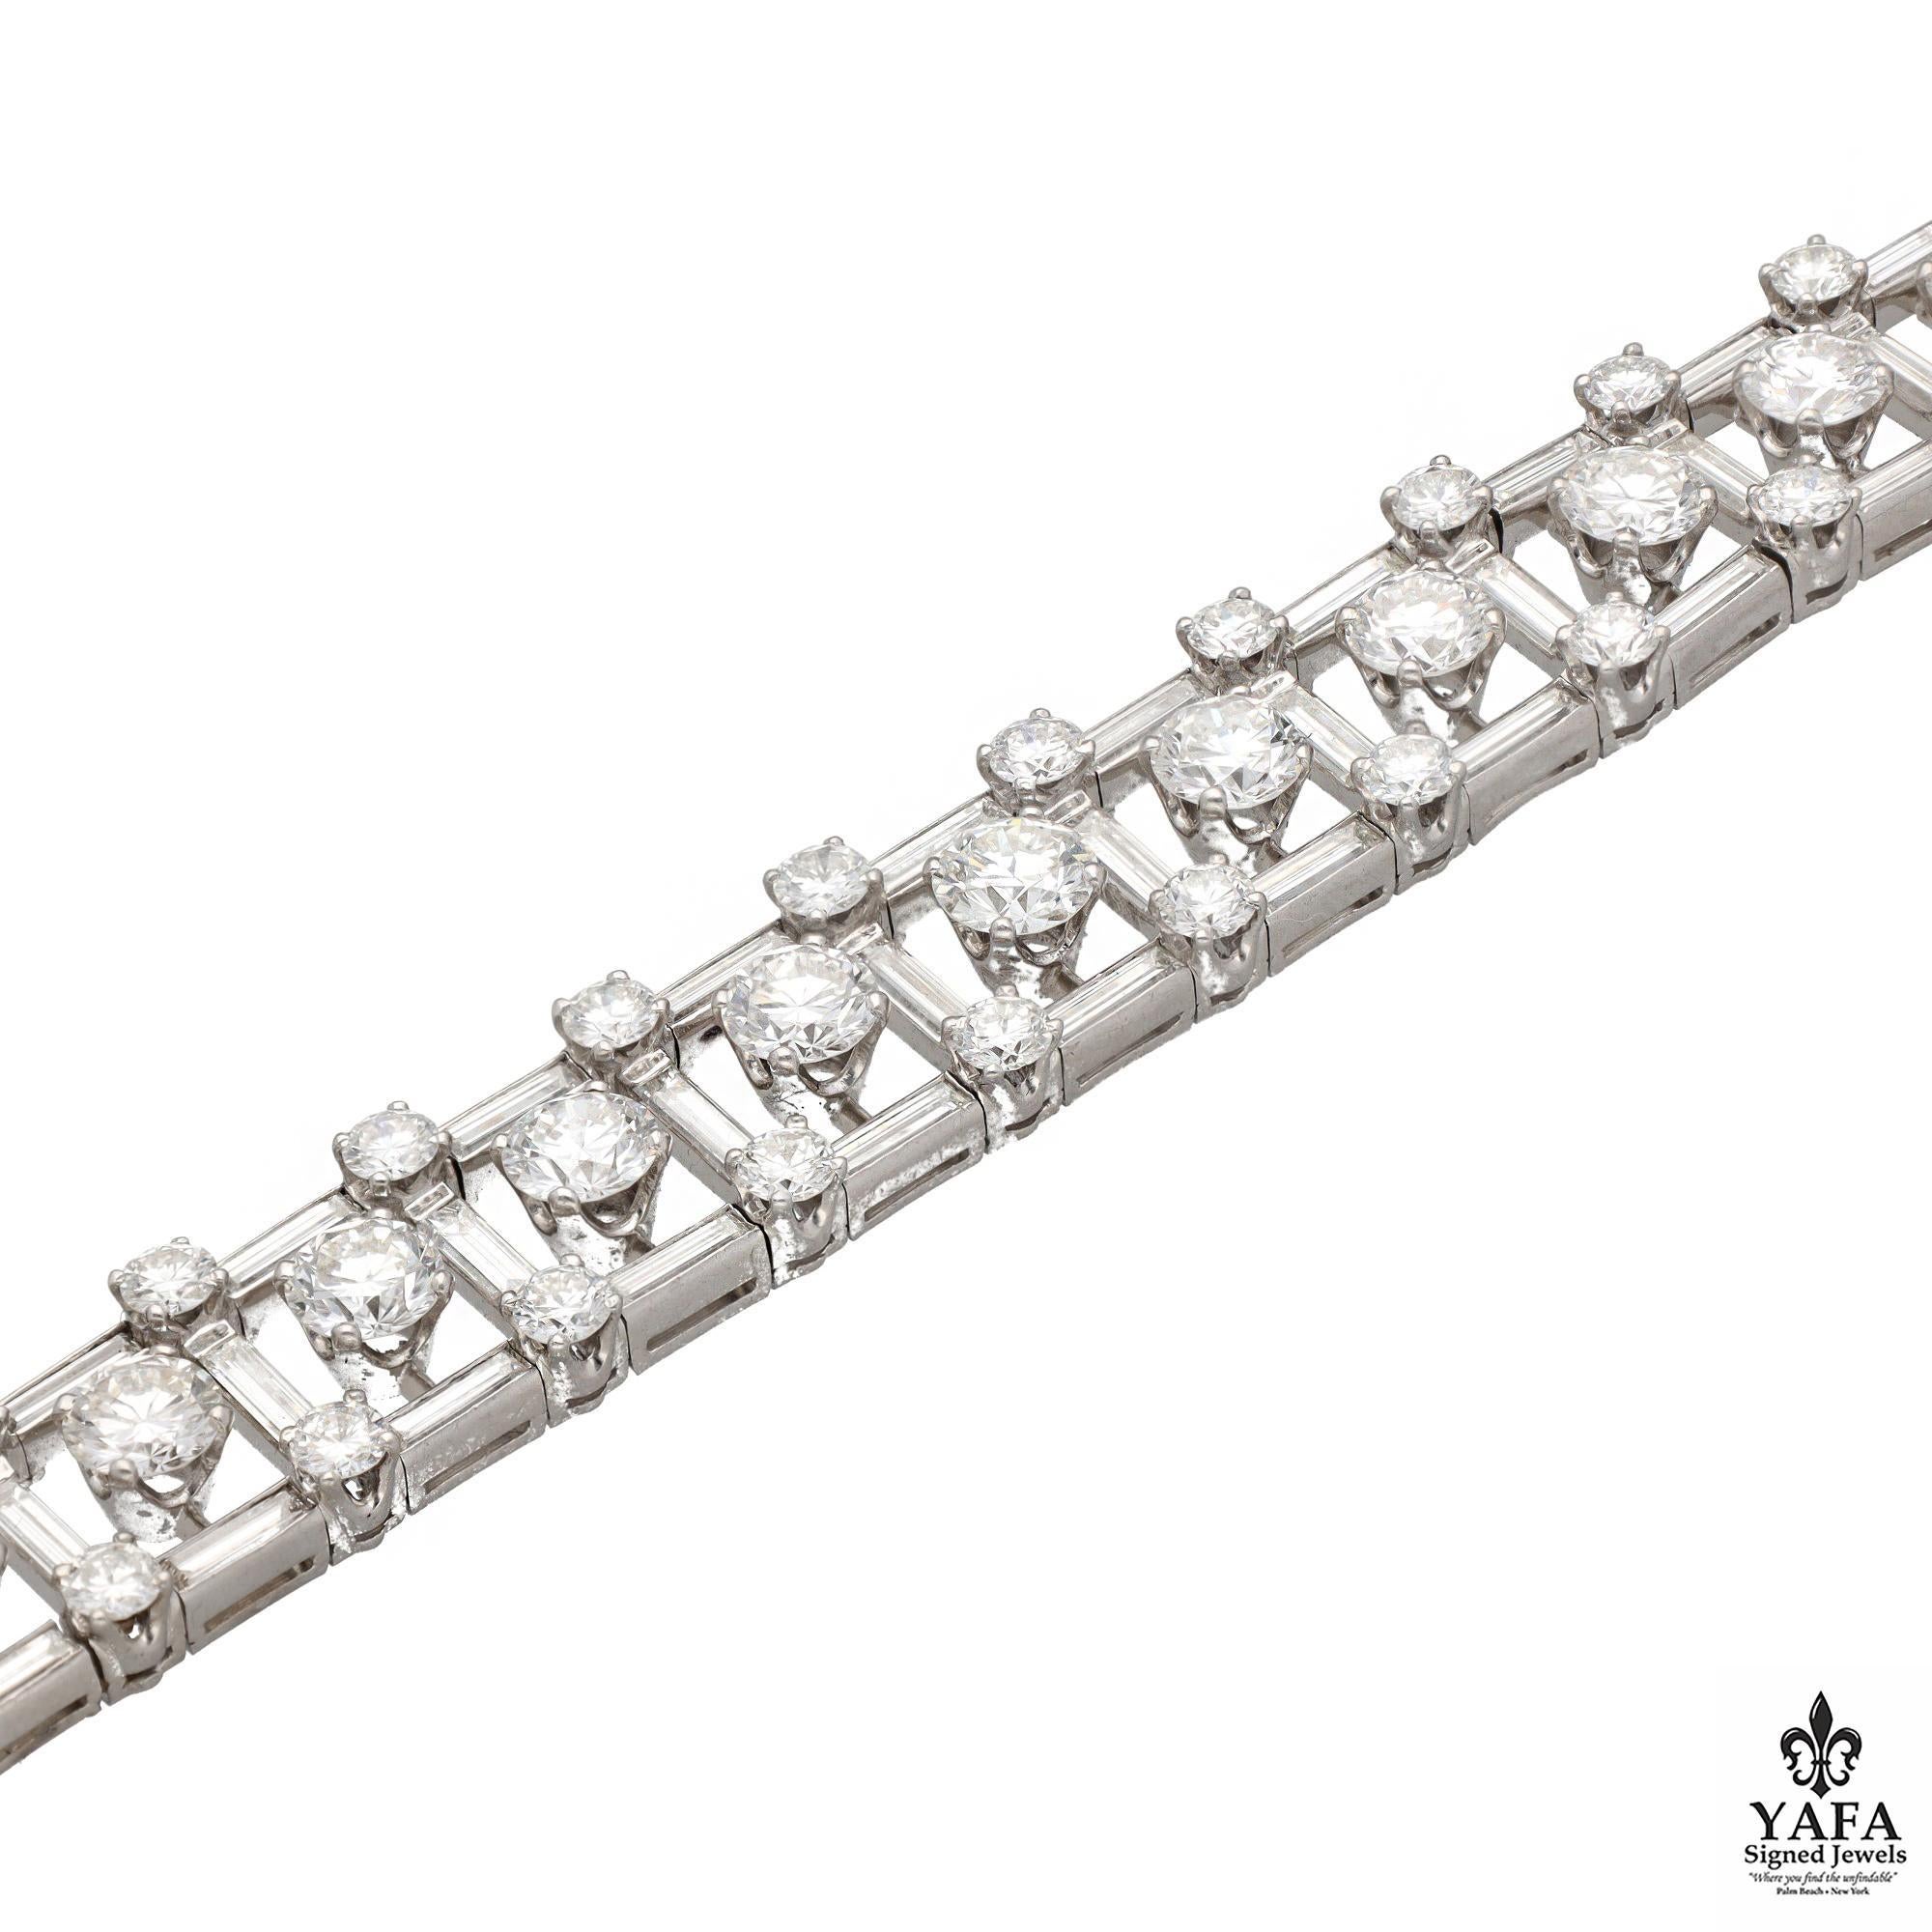 Van Cleef & Arpels Armband mit rundem Brillant- und Baguetteschliff in Platin.
Atemberaubend gefertigt - Dieses kunstvolle Design zeigt runde Diamanten, die durch die Mitte zu schweben scheinen - nur durch ihre schiere Brillanz. Dieses